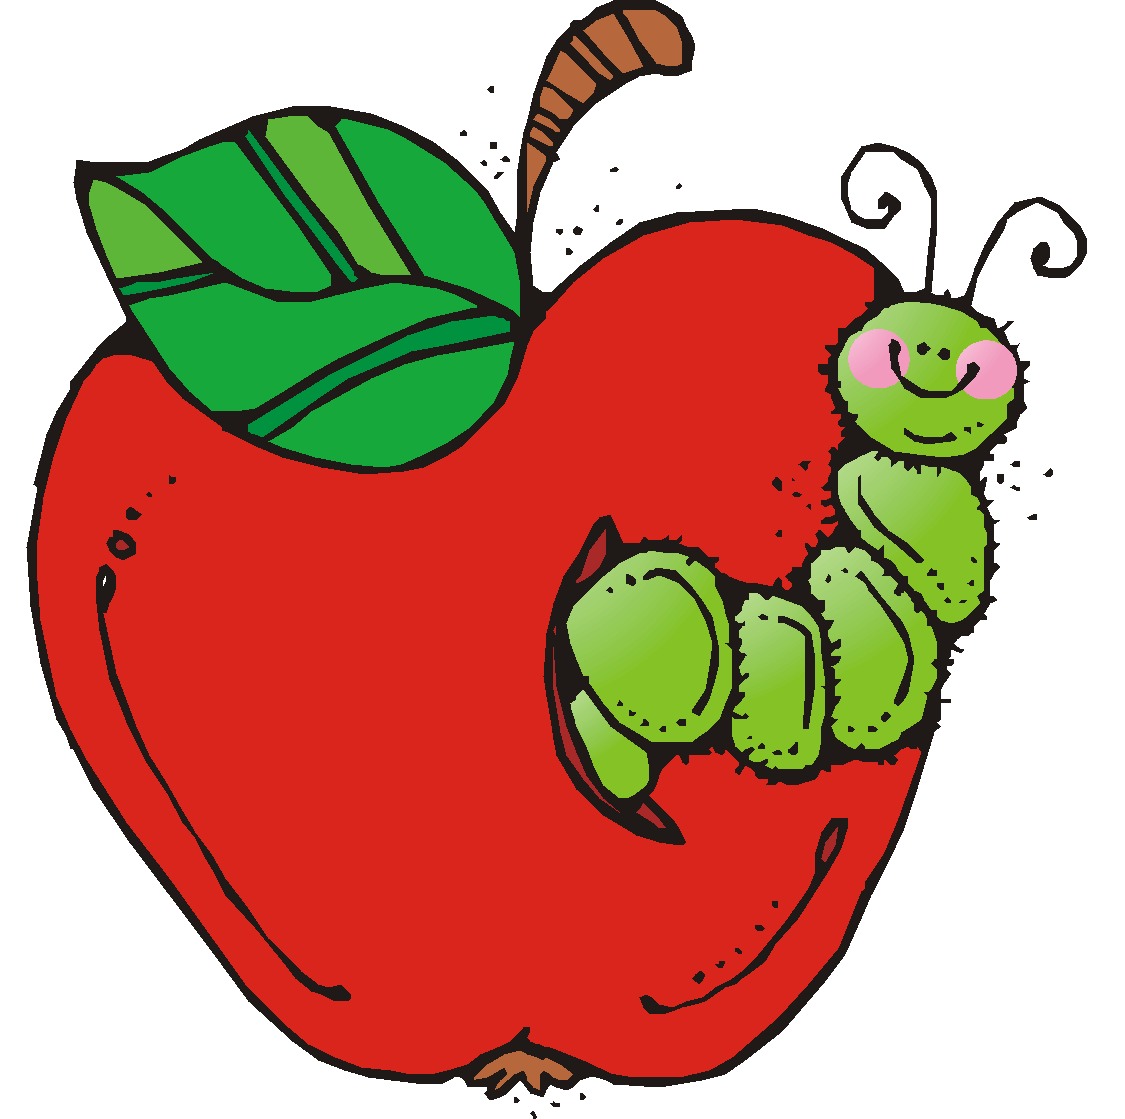 teacher apple clipart - Teacher Apple Clipart